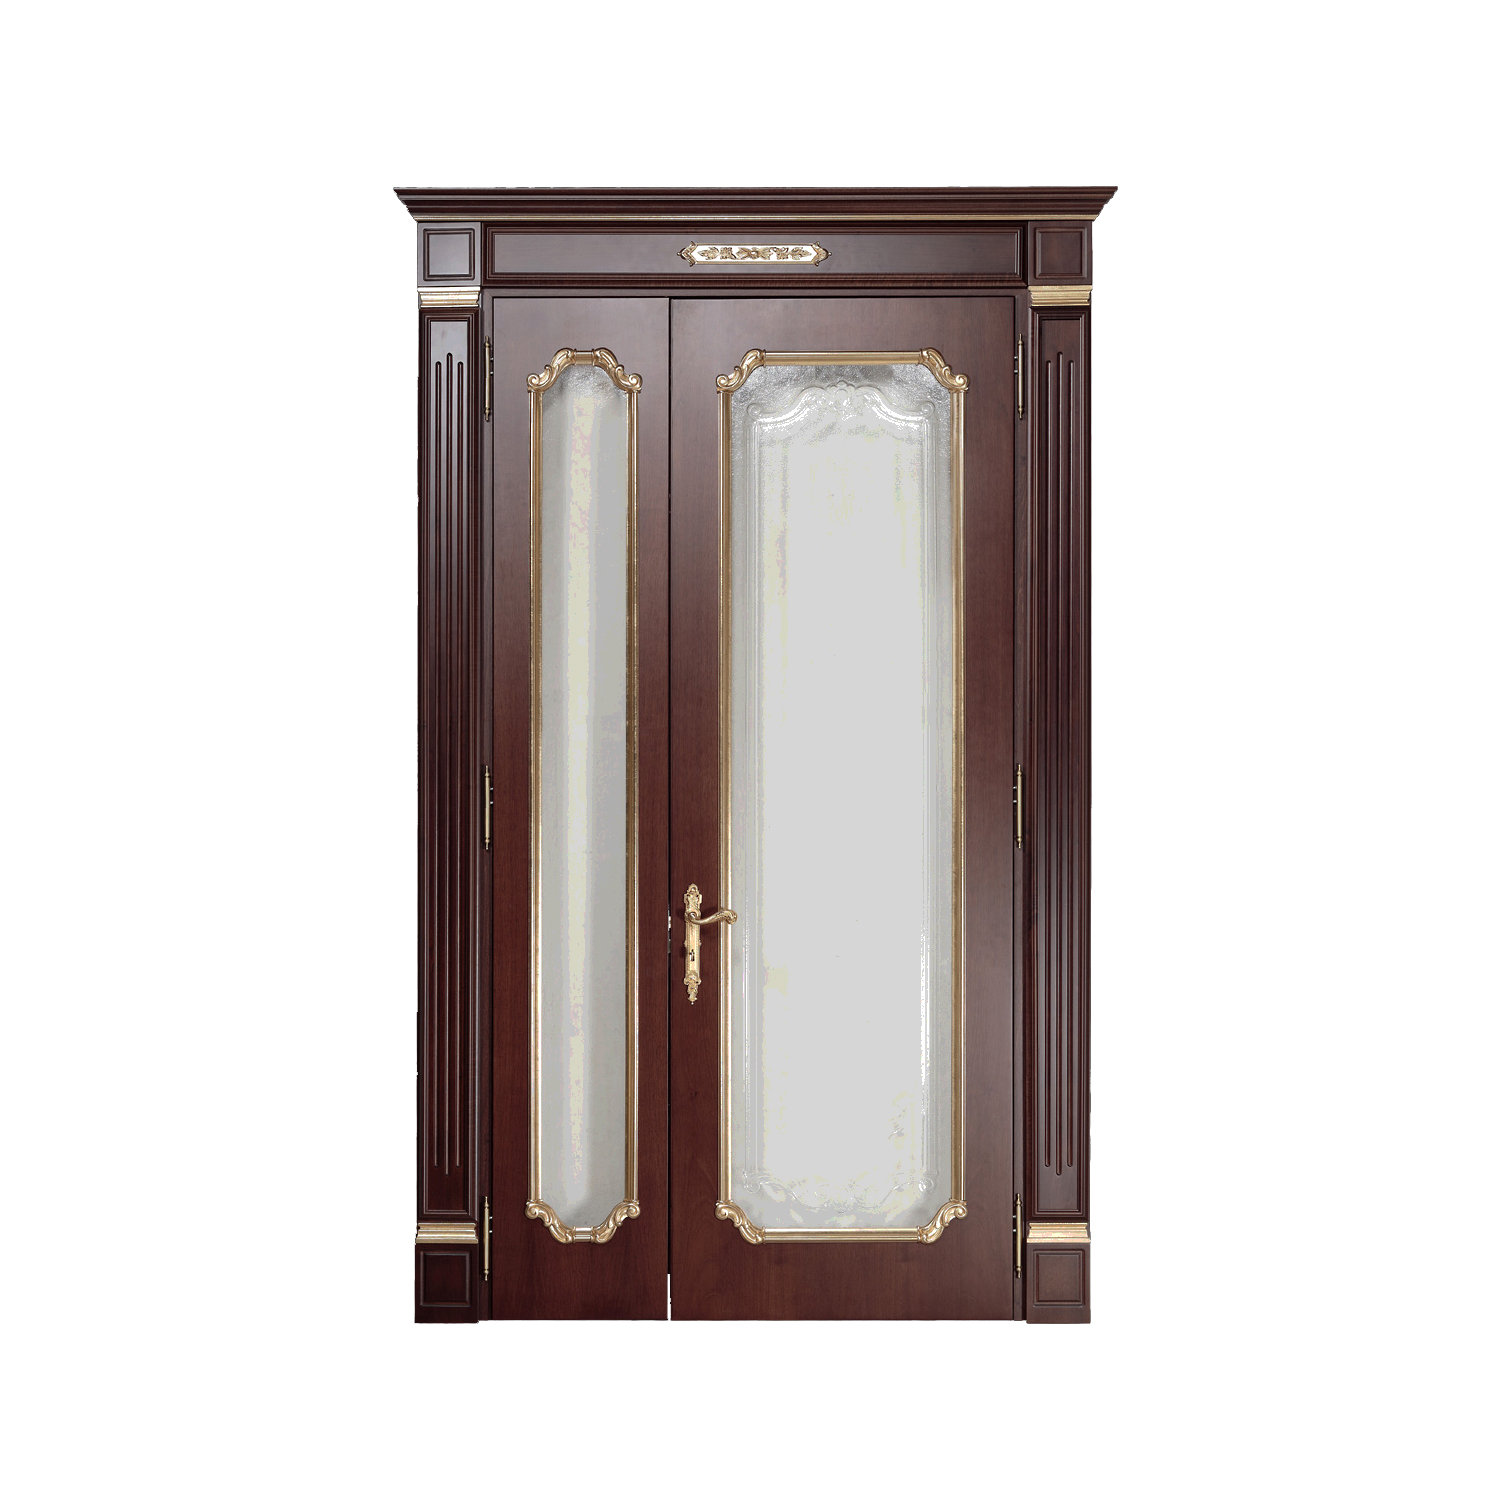 Входная дверь, стиль классический, дизайн Sige Gold, модель Custom Collection, GD 655SV.2A.11